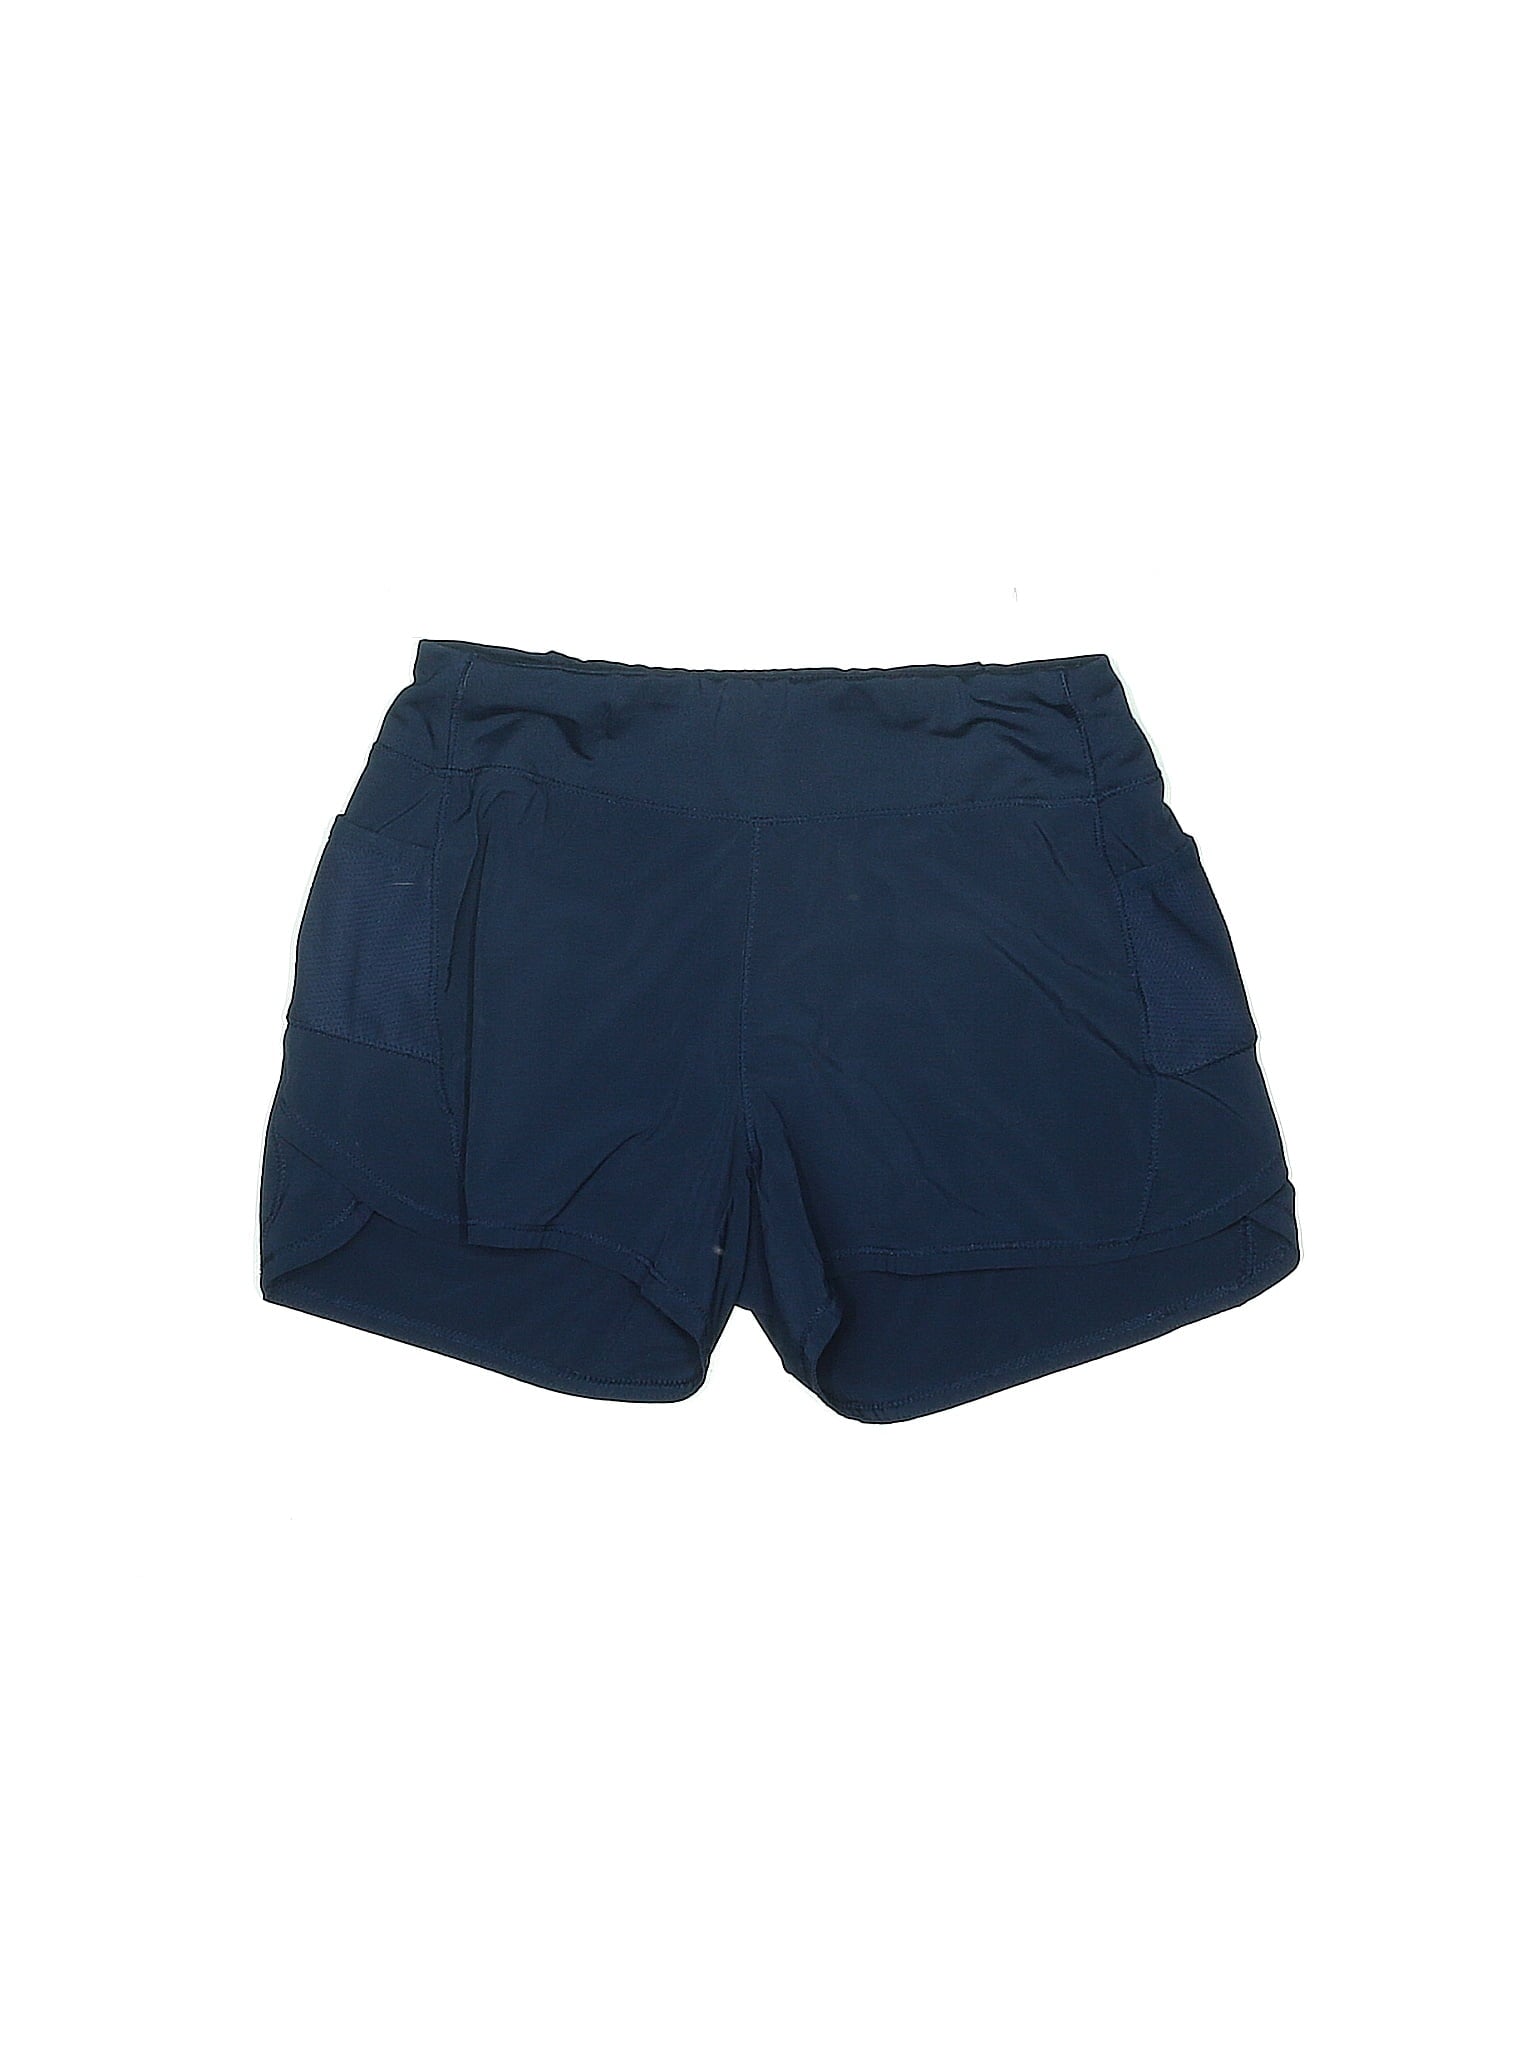 Athletic Shorts size - 8 - 10